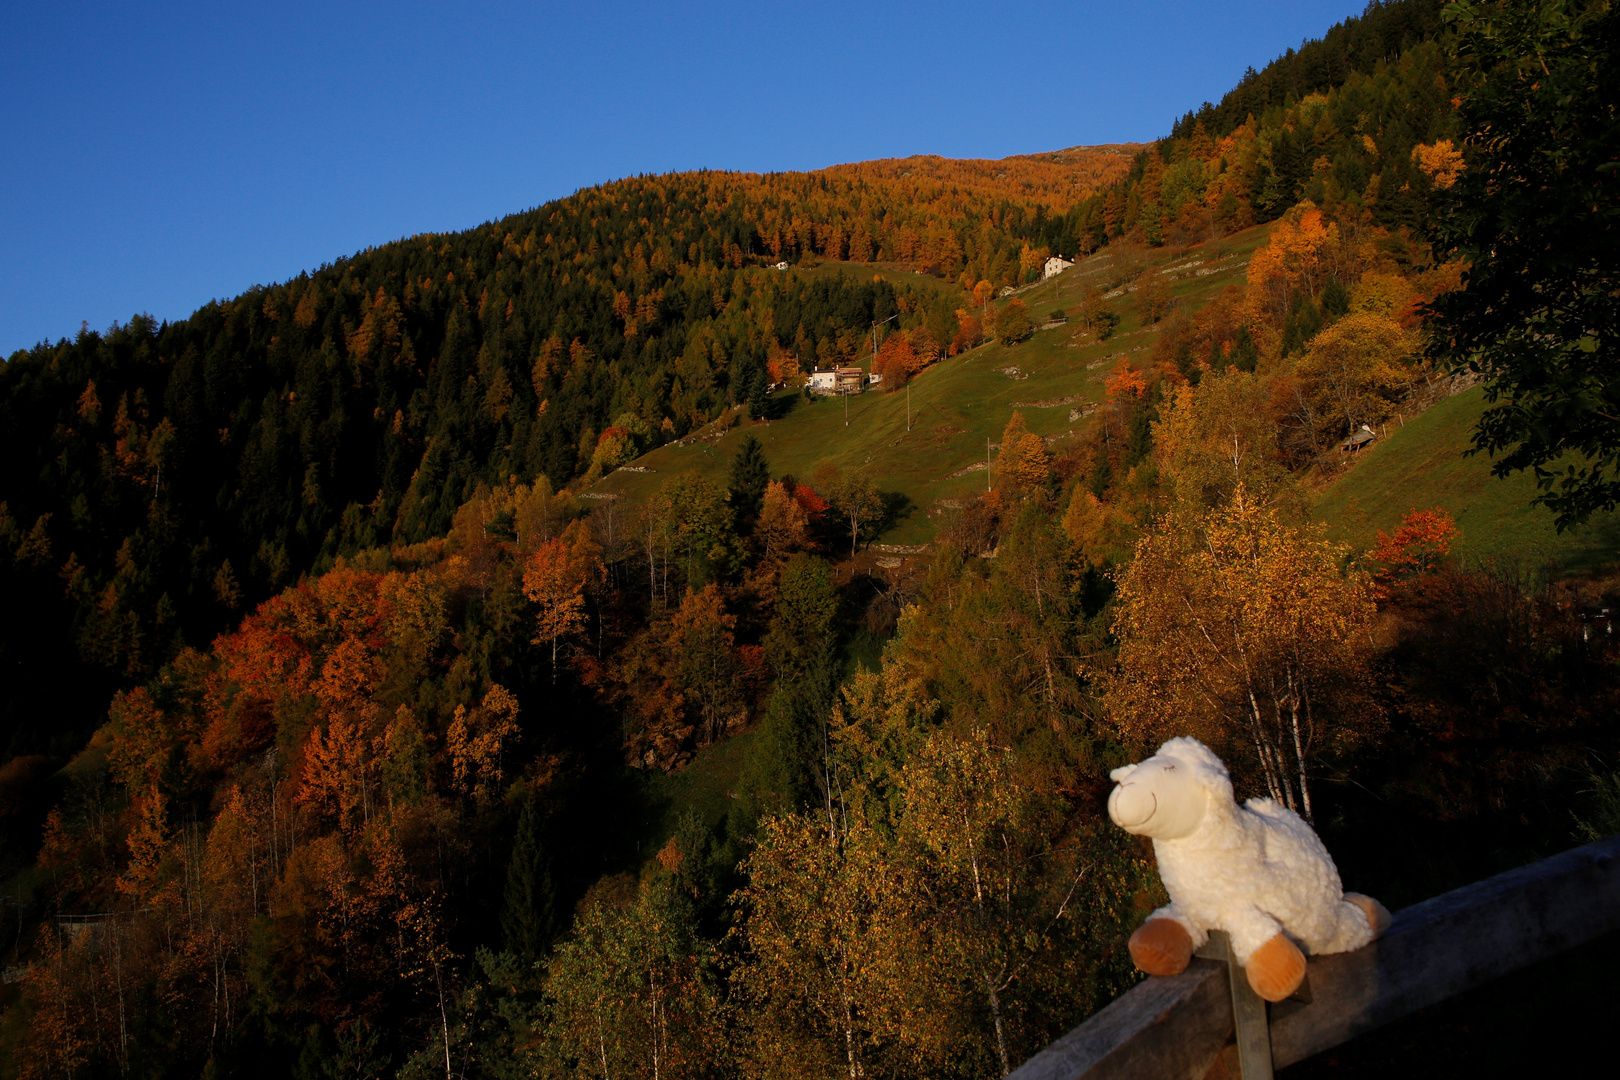 Nuvola das Schaf bestaunt die Herbstfarben 